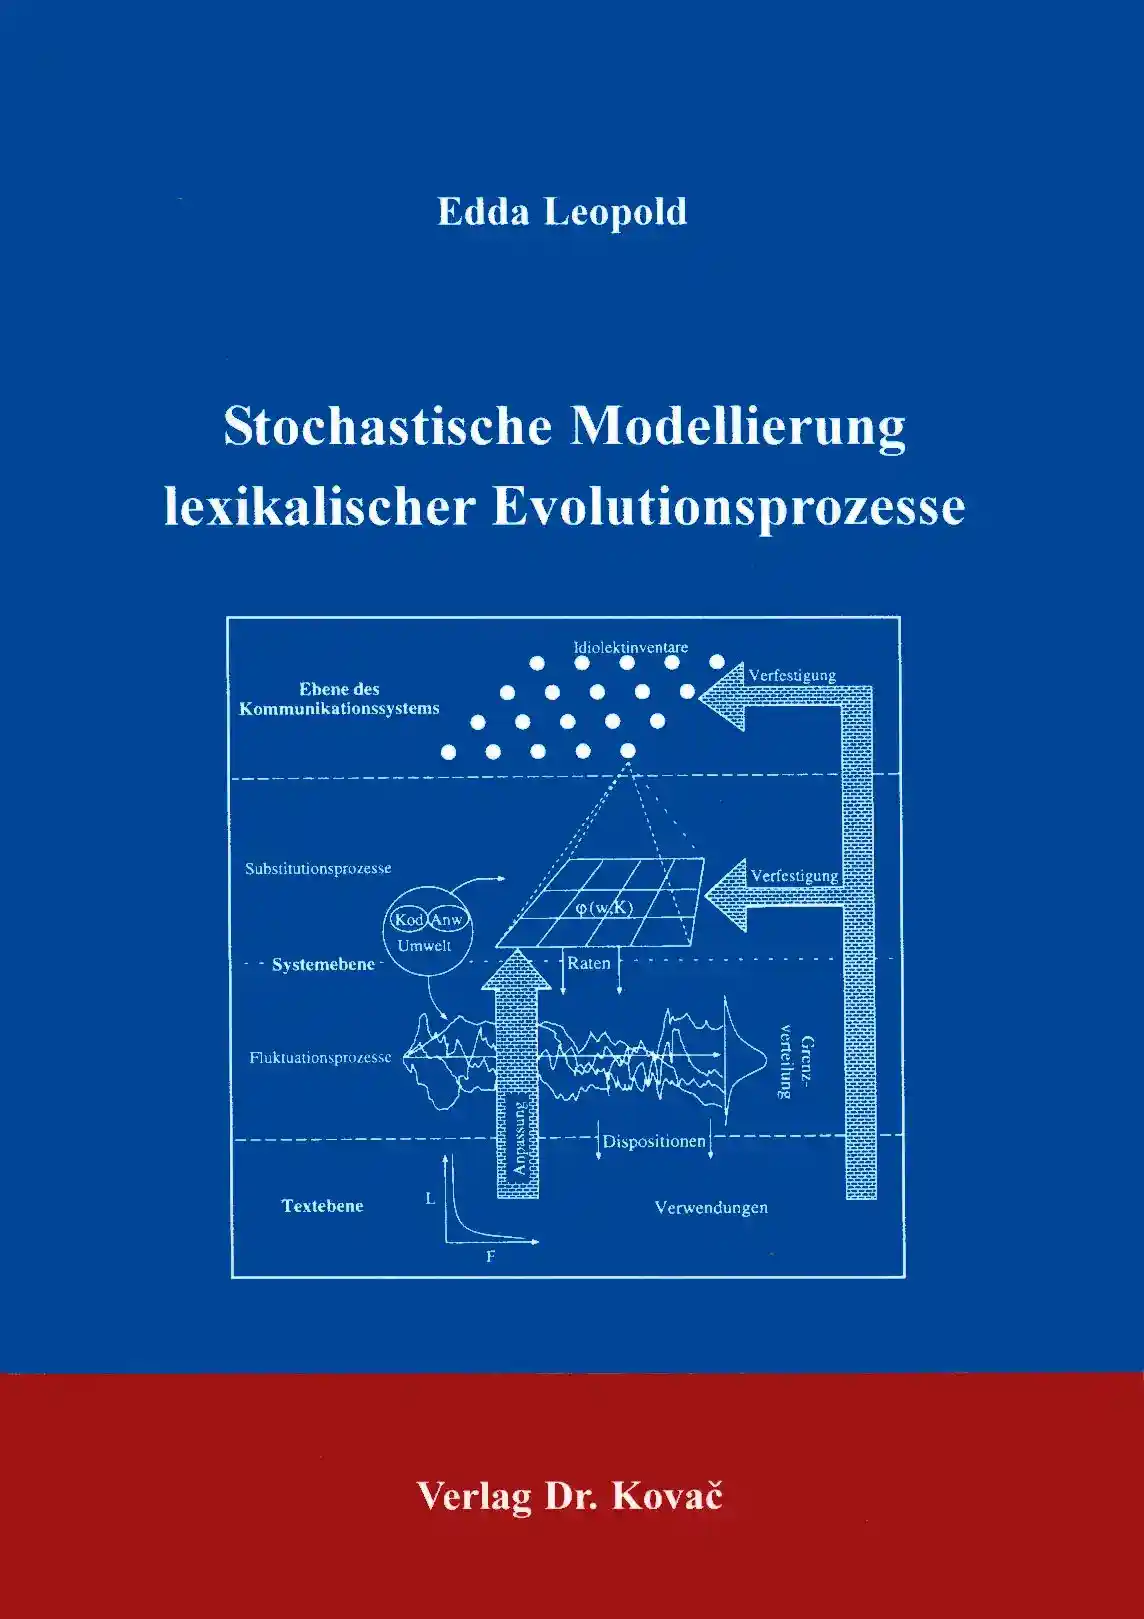 Stochastische Modellierung lexikalischer Evolutionsprozesse (Forschungsarbeit)